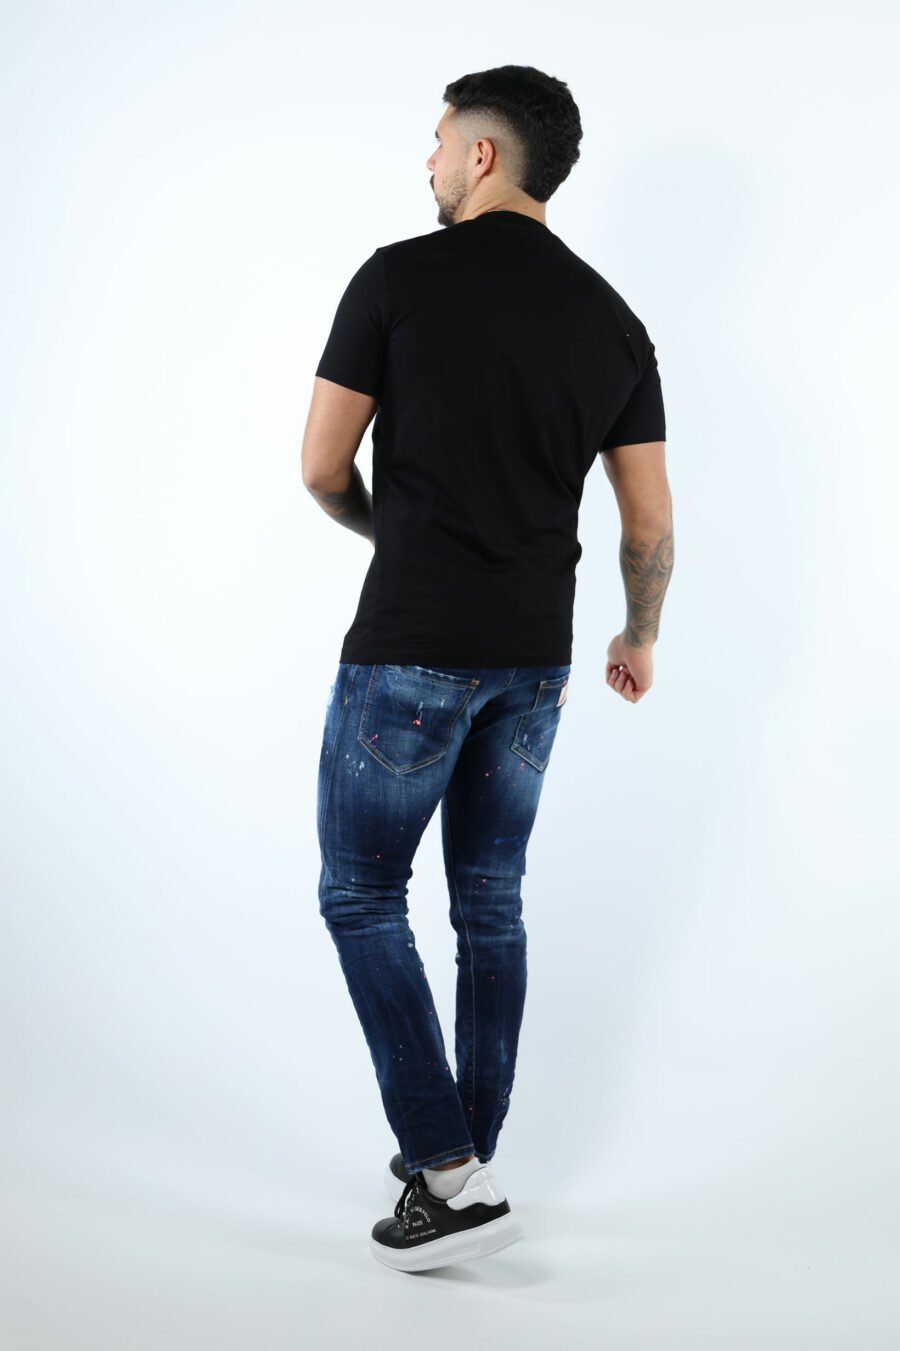 Camiseta negra con maxilogo "icon" garabatos - 106929